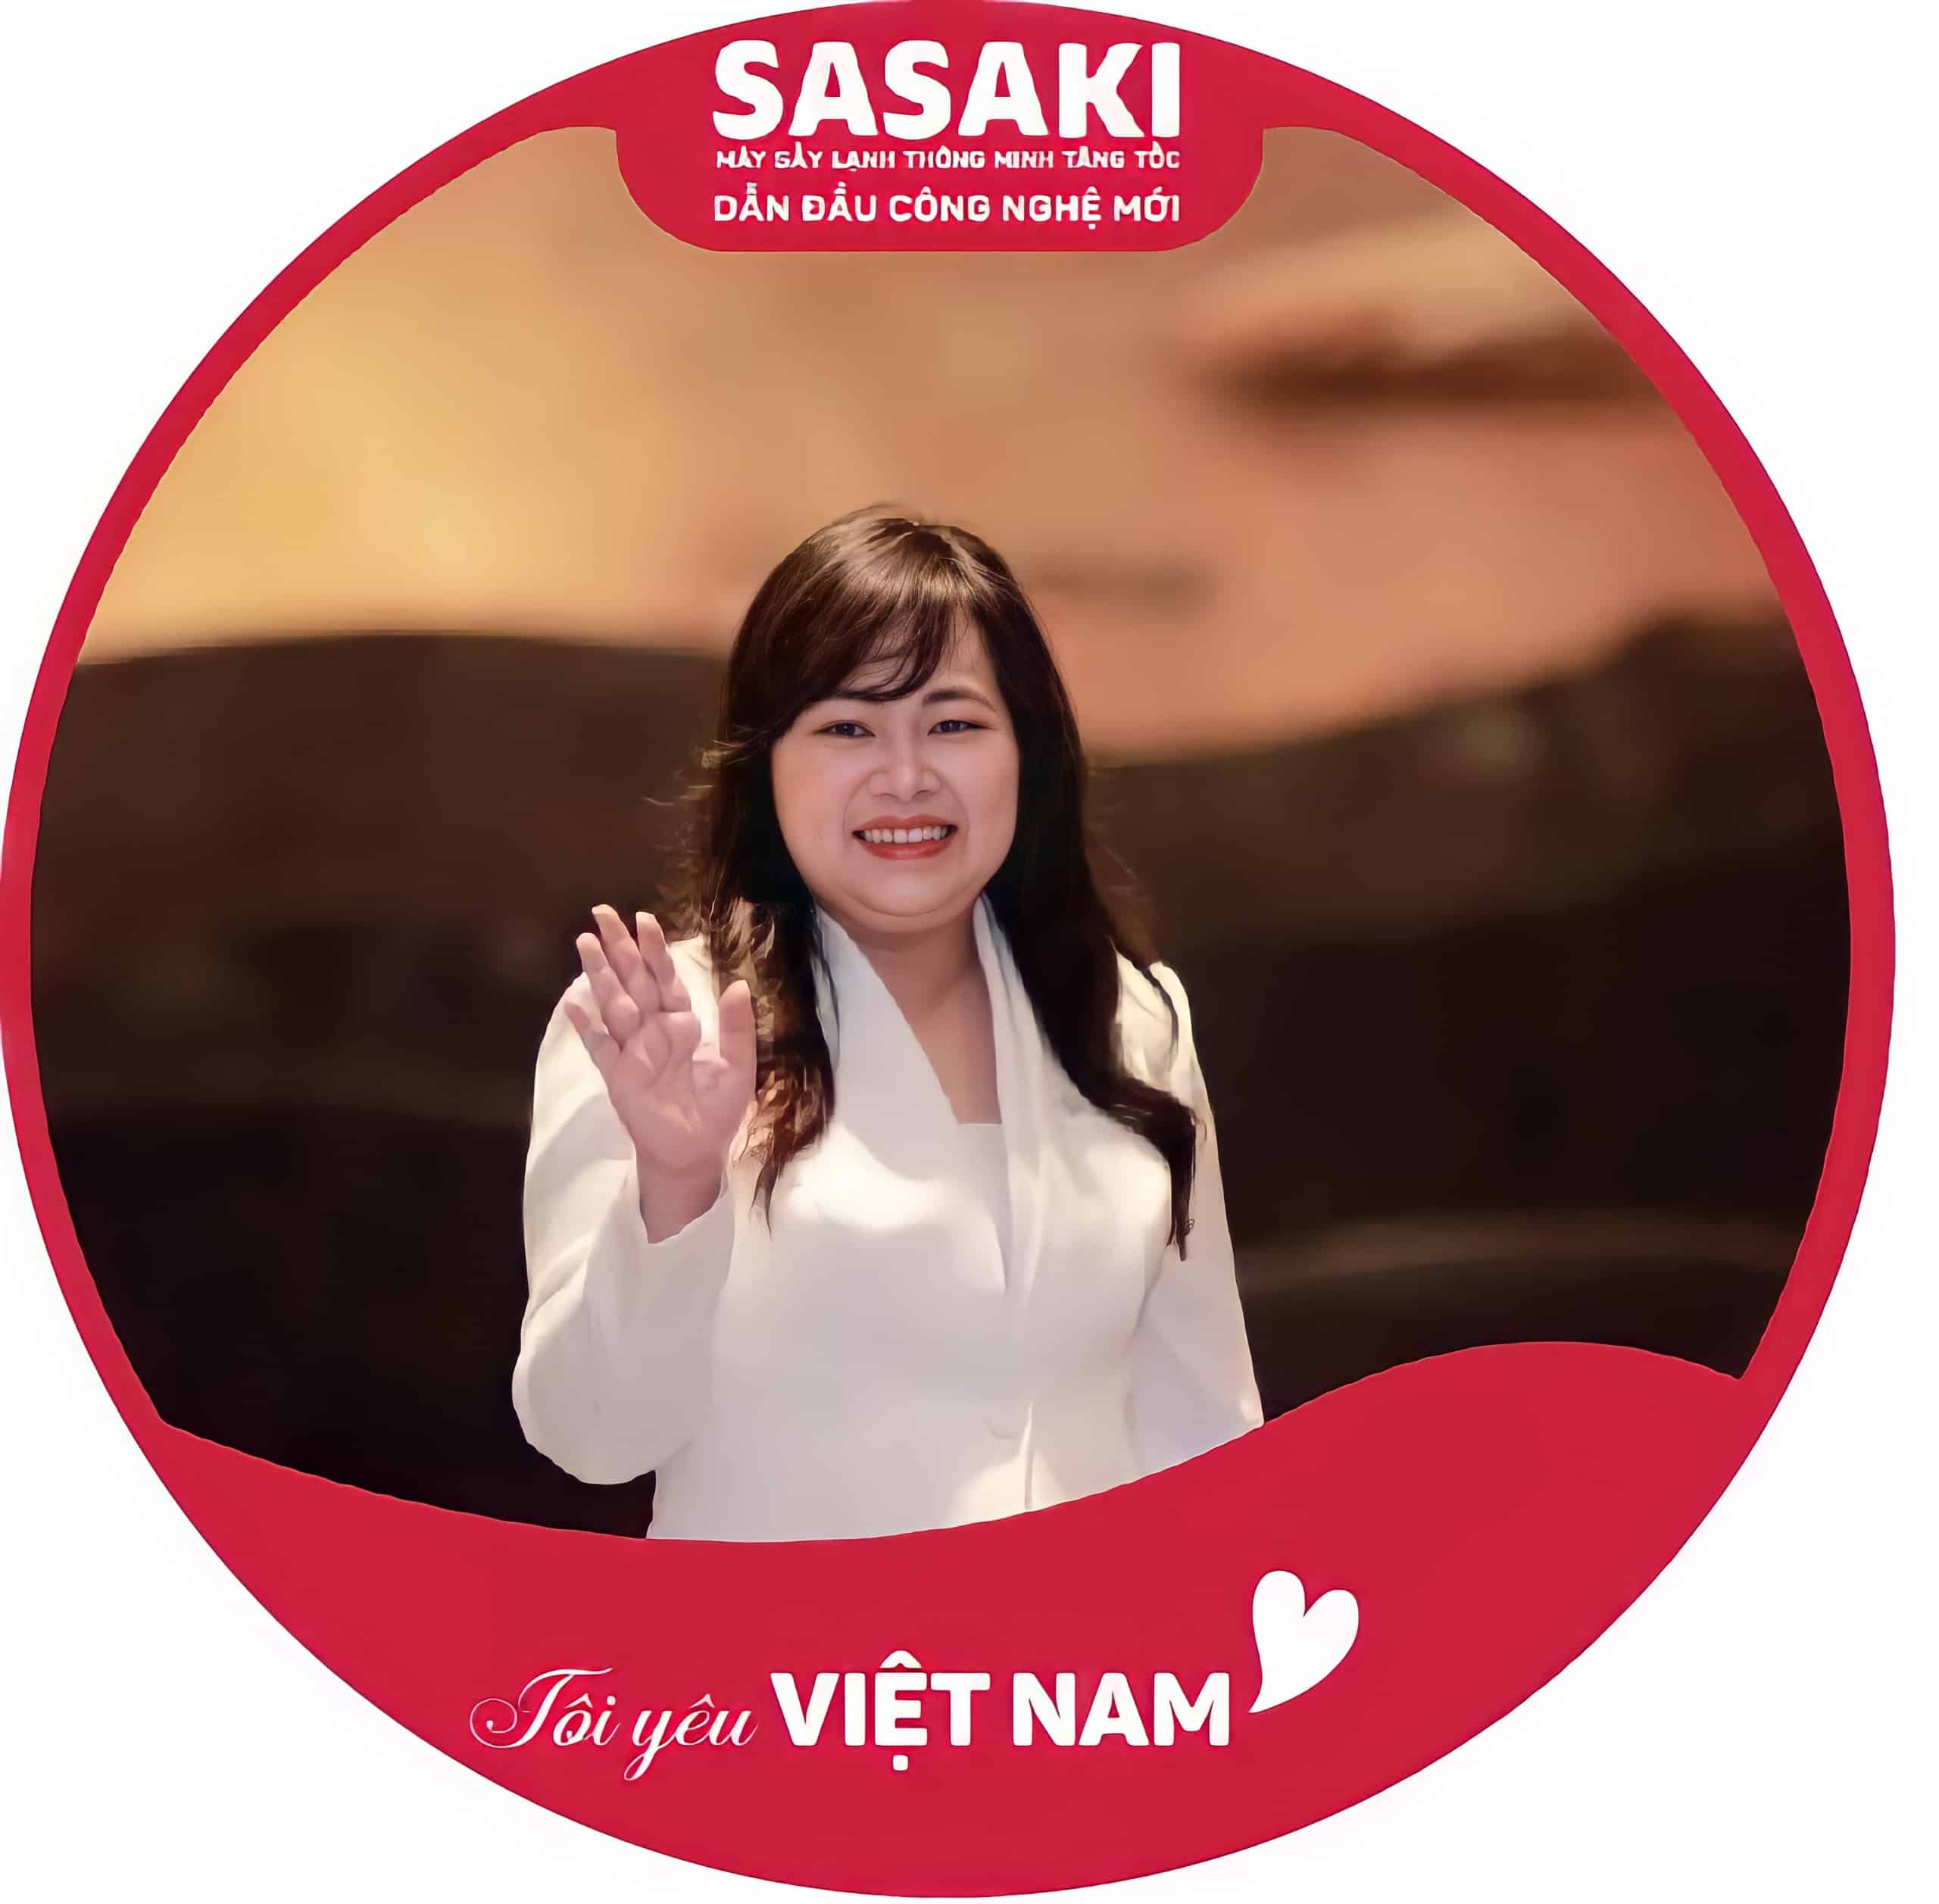 bà Trần Thị Thu Trang - Chủ tịch công ty Hanel PT, thương hiệu SASAKI